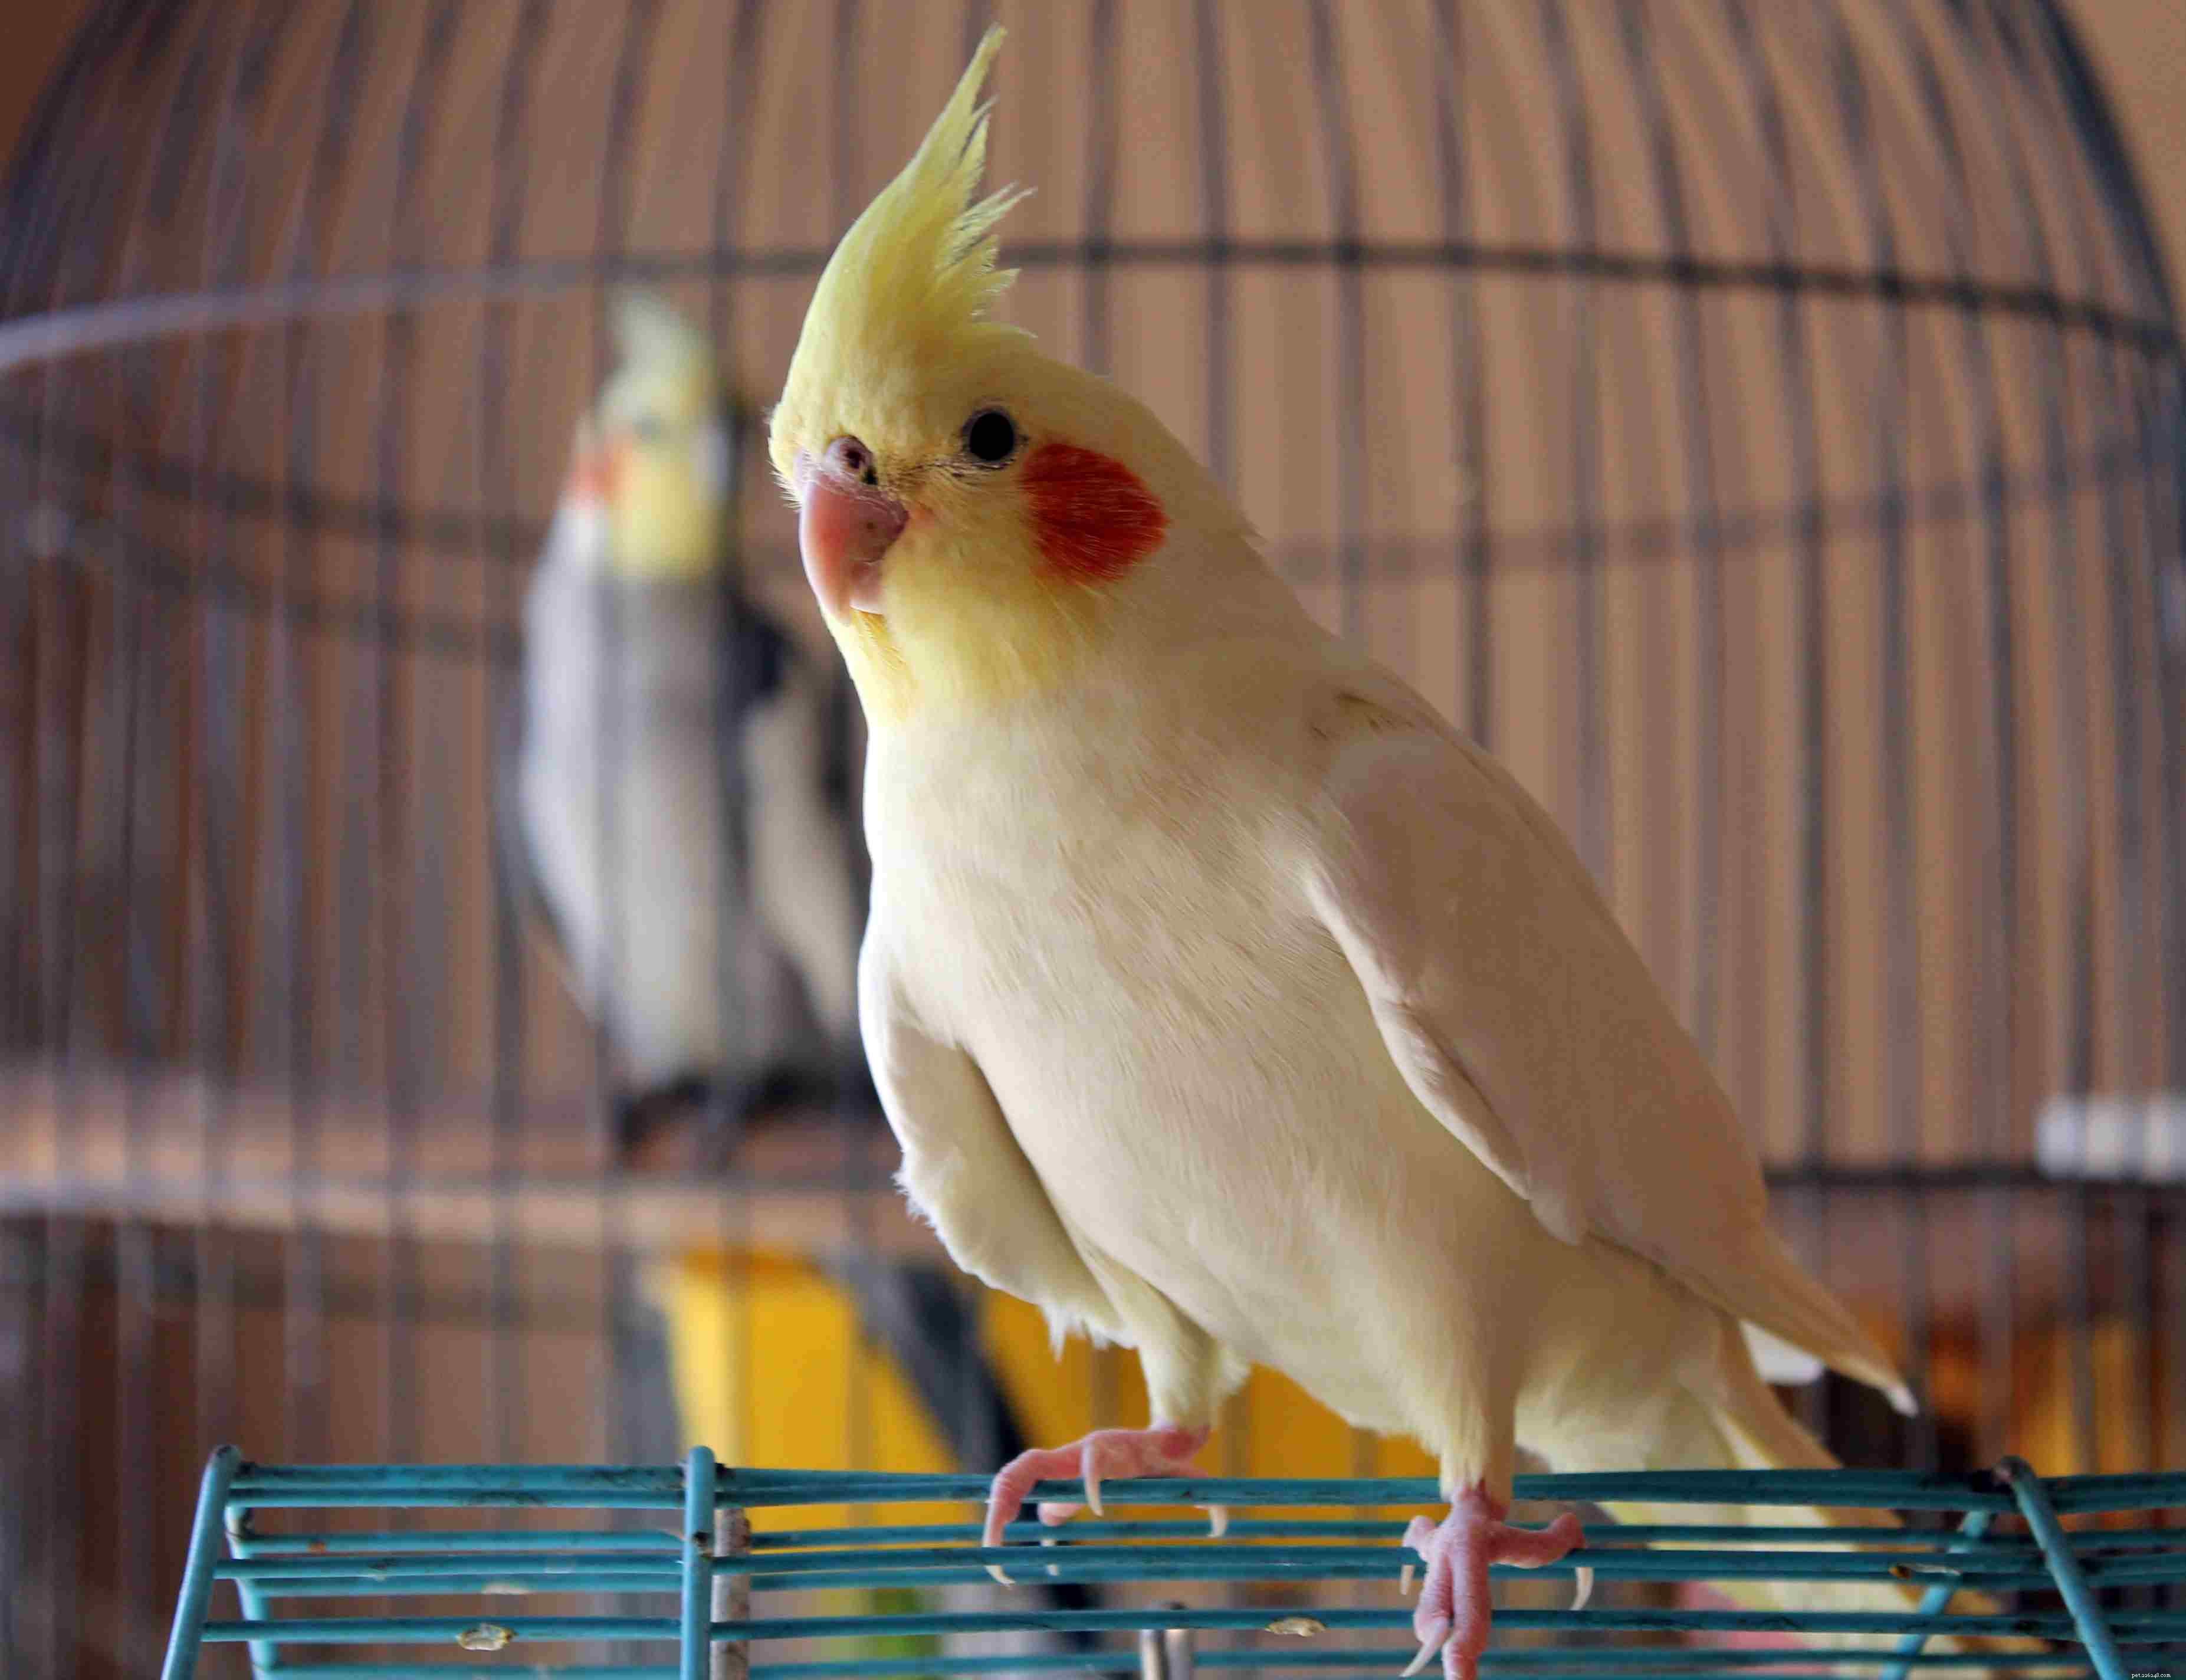 애완동물로 키우기 좋은 노란 앵무새 8종